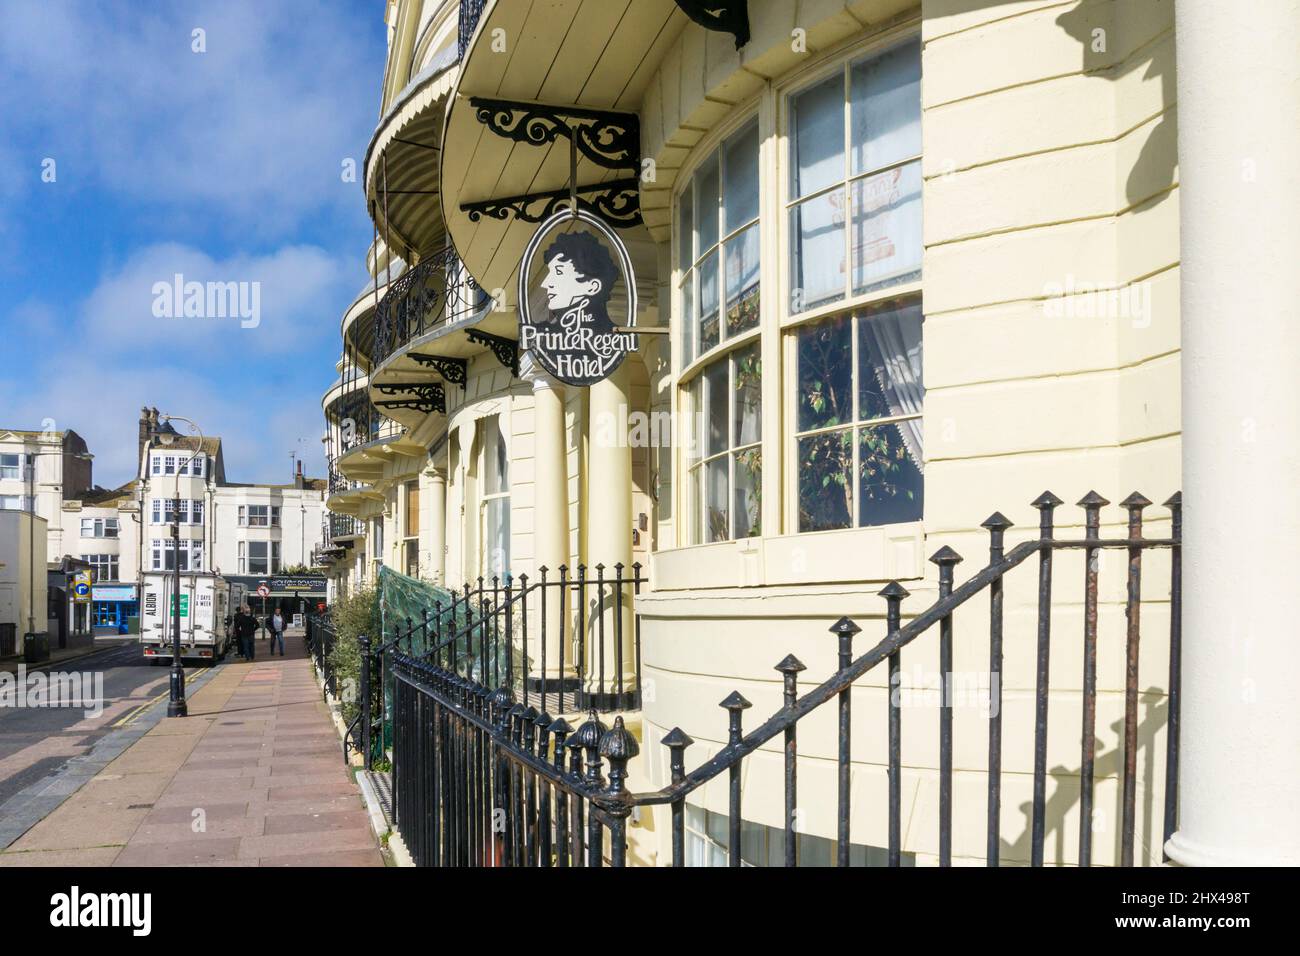 Panneau pour le Prince Regent Hotel, Regency Square, Brighton. Banque D'Images